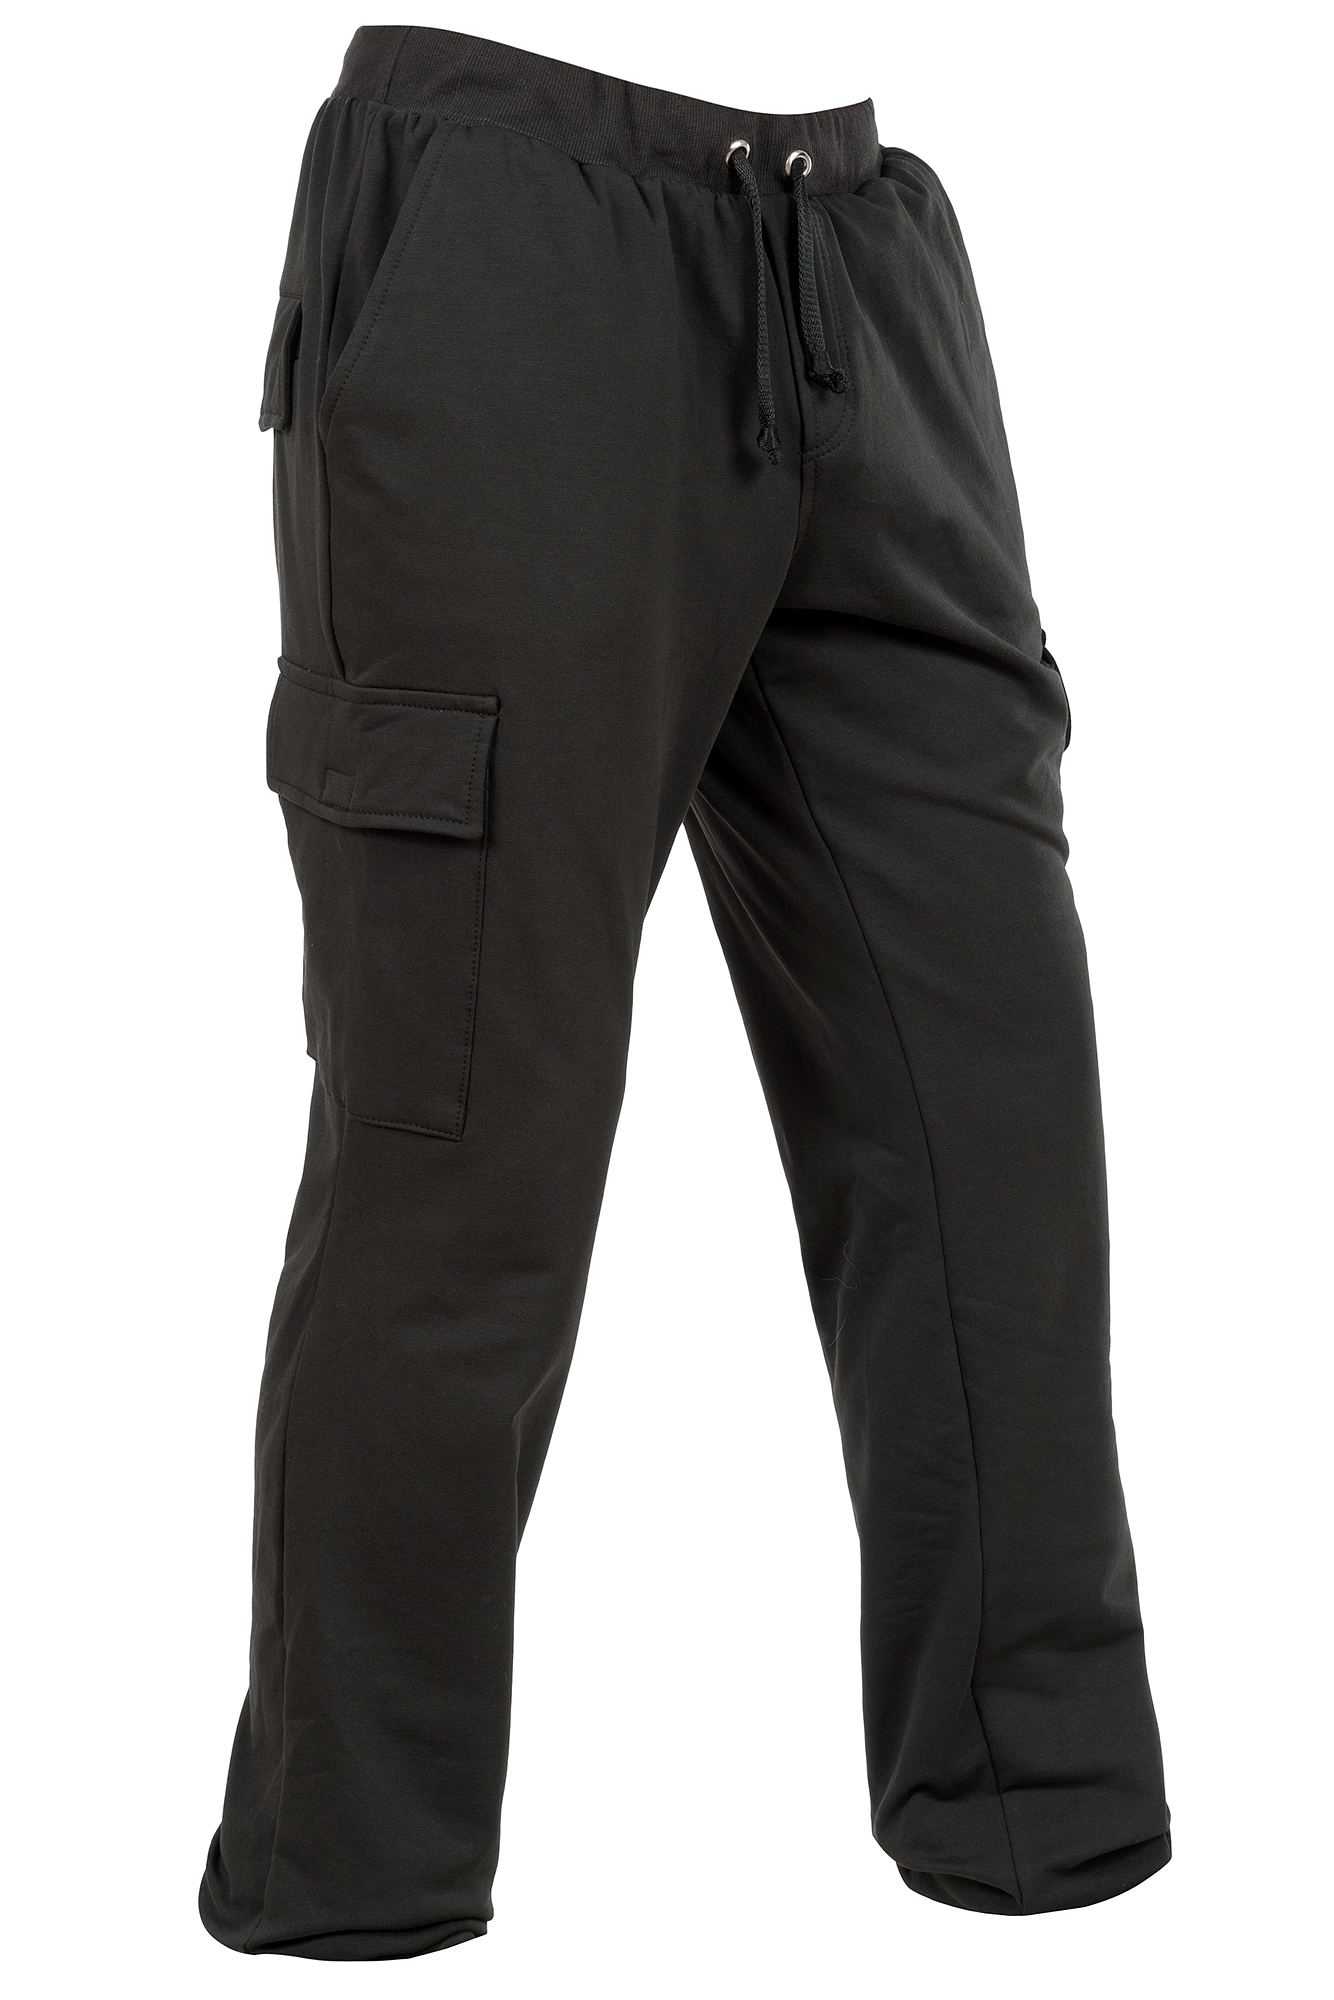 Трикотажные брюки "Карелия" (Чёрные) оптом и в розницу